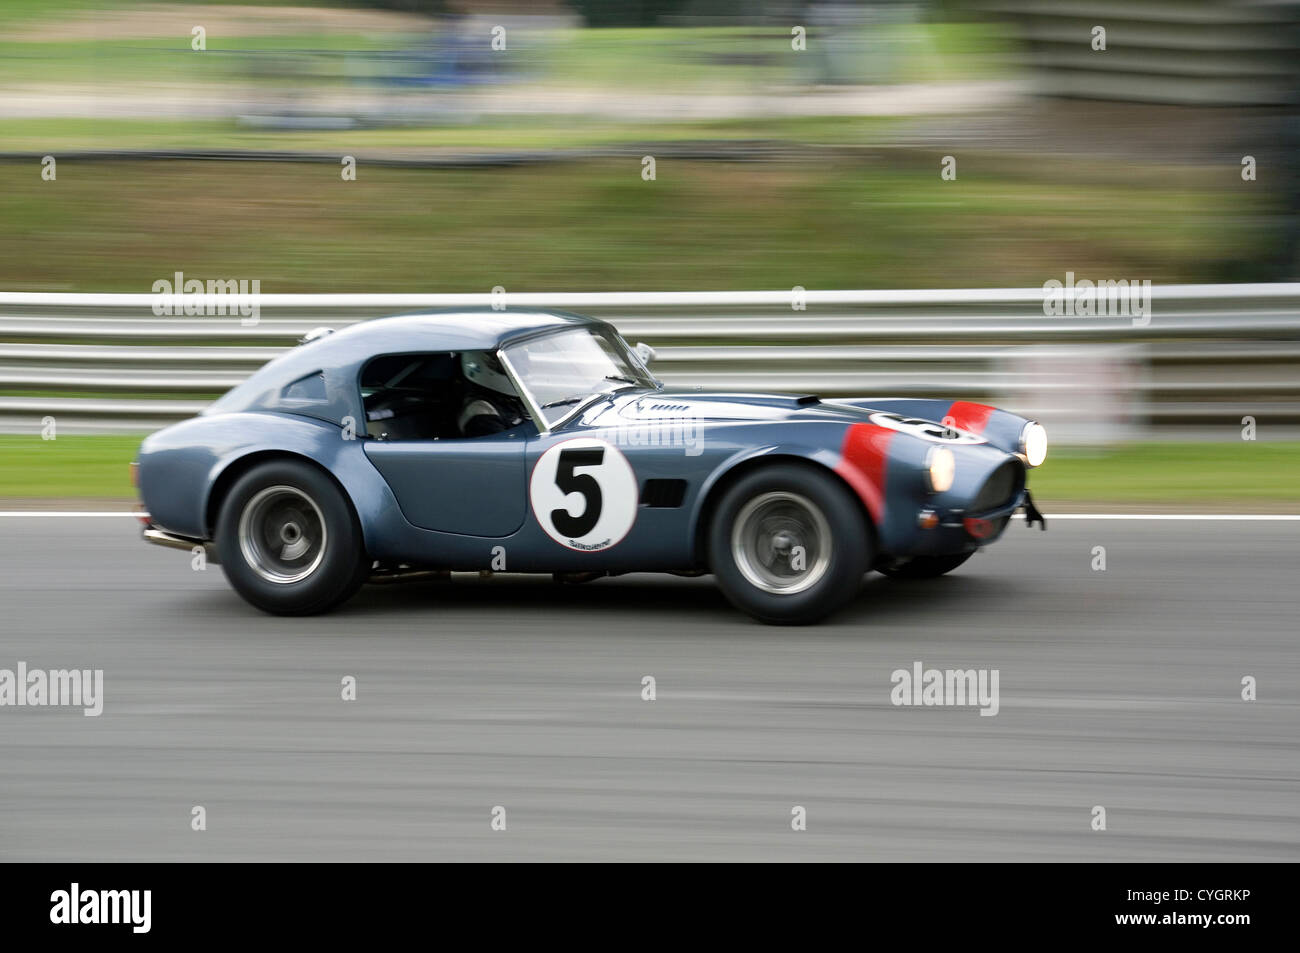 An AC Cobra hardtop classic racing car traveling fast on a racing circuit. Stock Photo